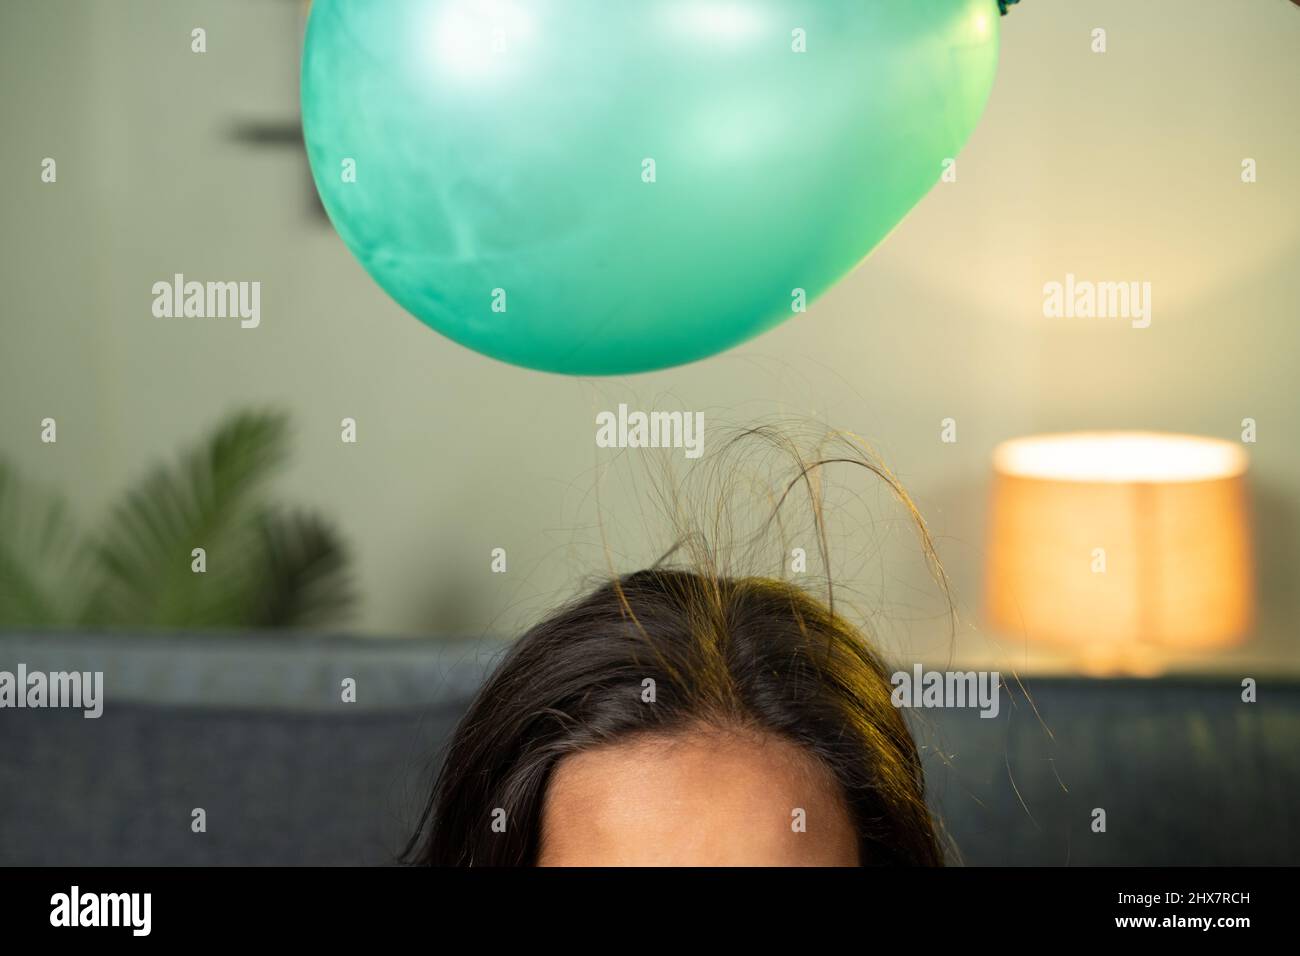 Nahaufnahme von spielenden Kindern, indem man einen Ballon auf das anziehende Haar legt - mit dem Wissen um statisches Ankleben auf das Haus, um Wissenschaft zu experimentieren und zu lernen. Stockfoto